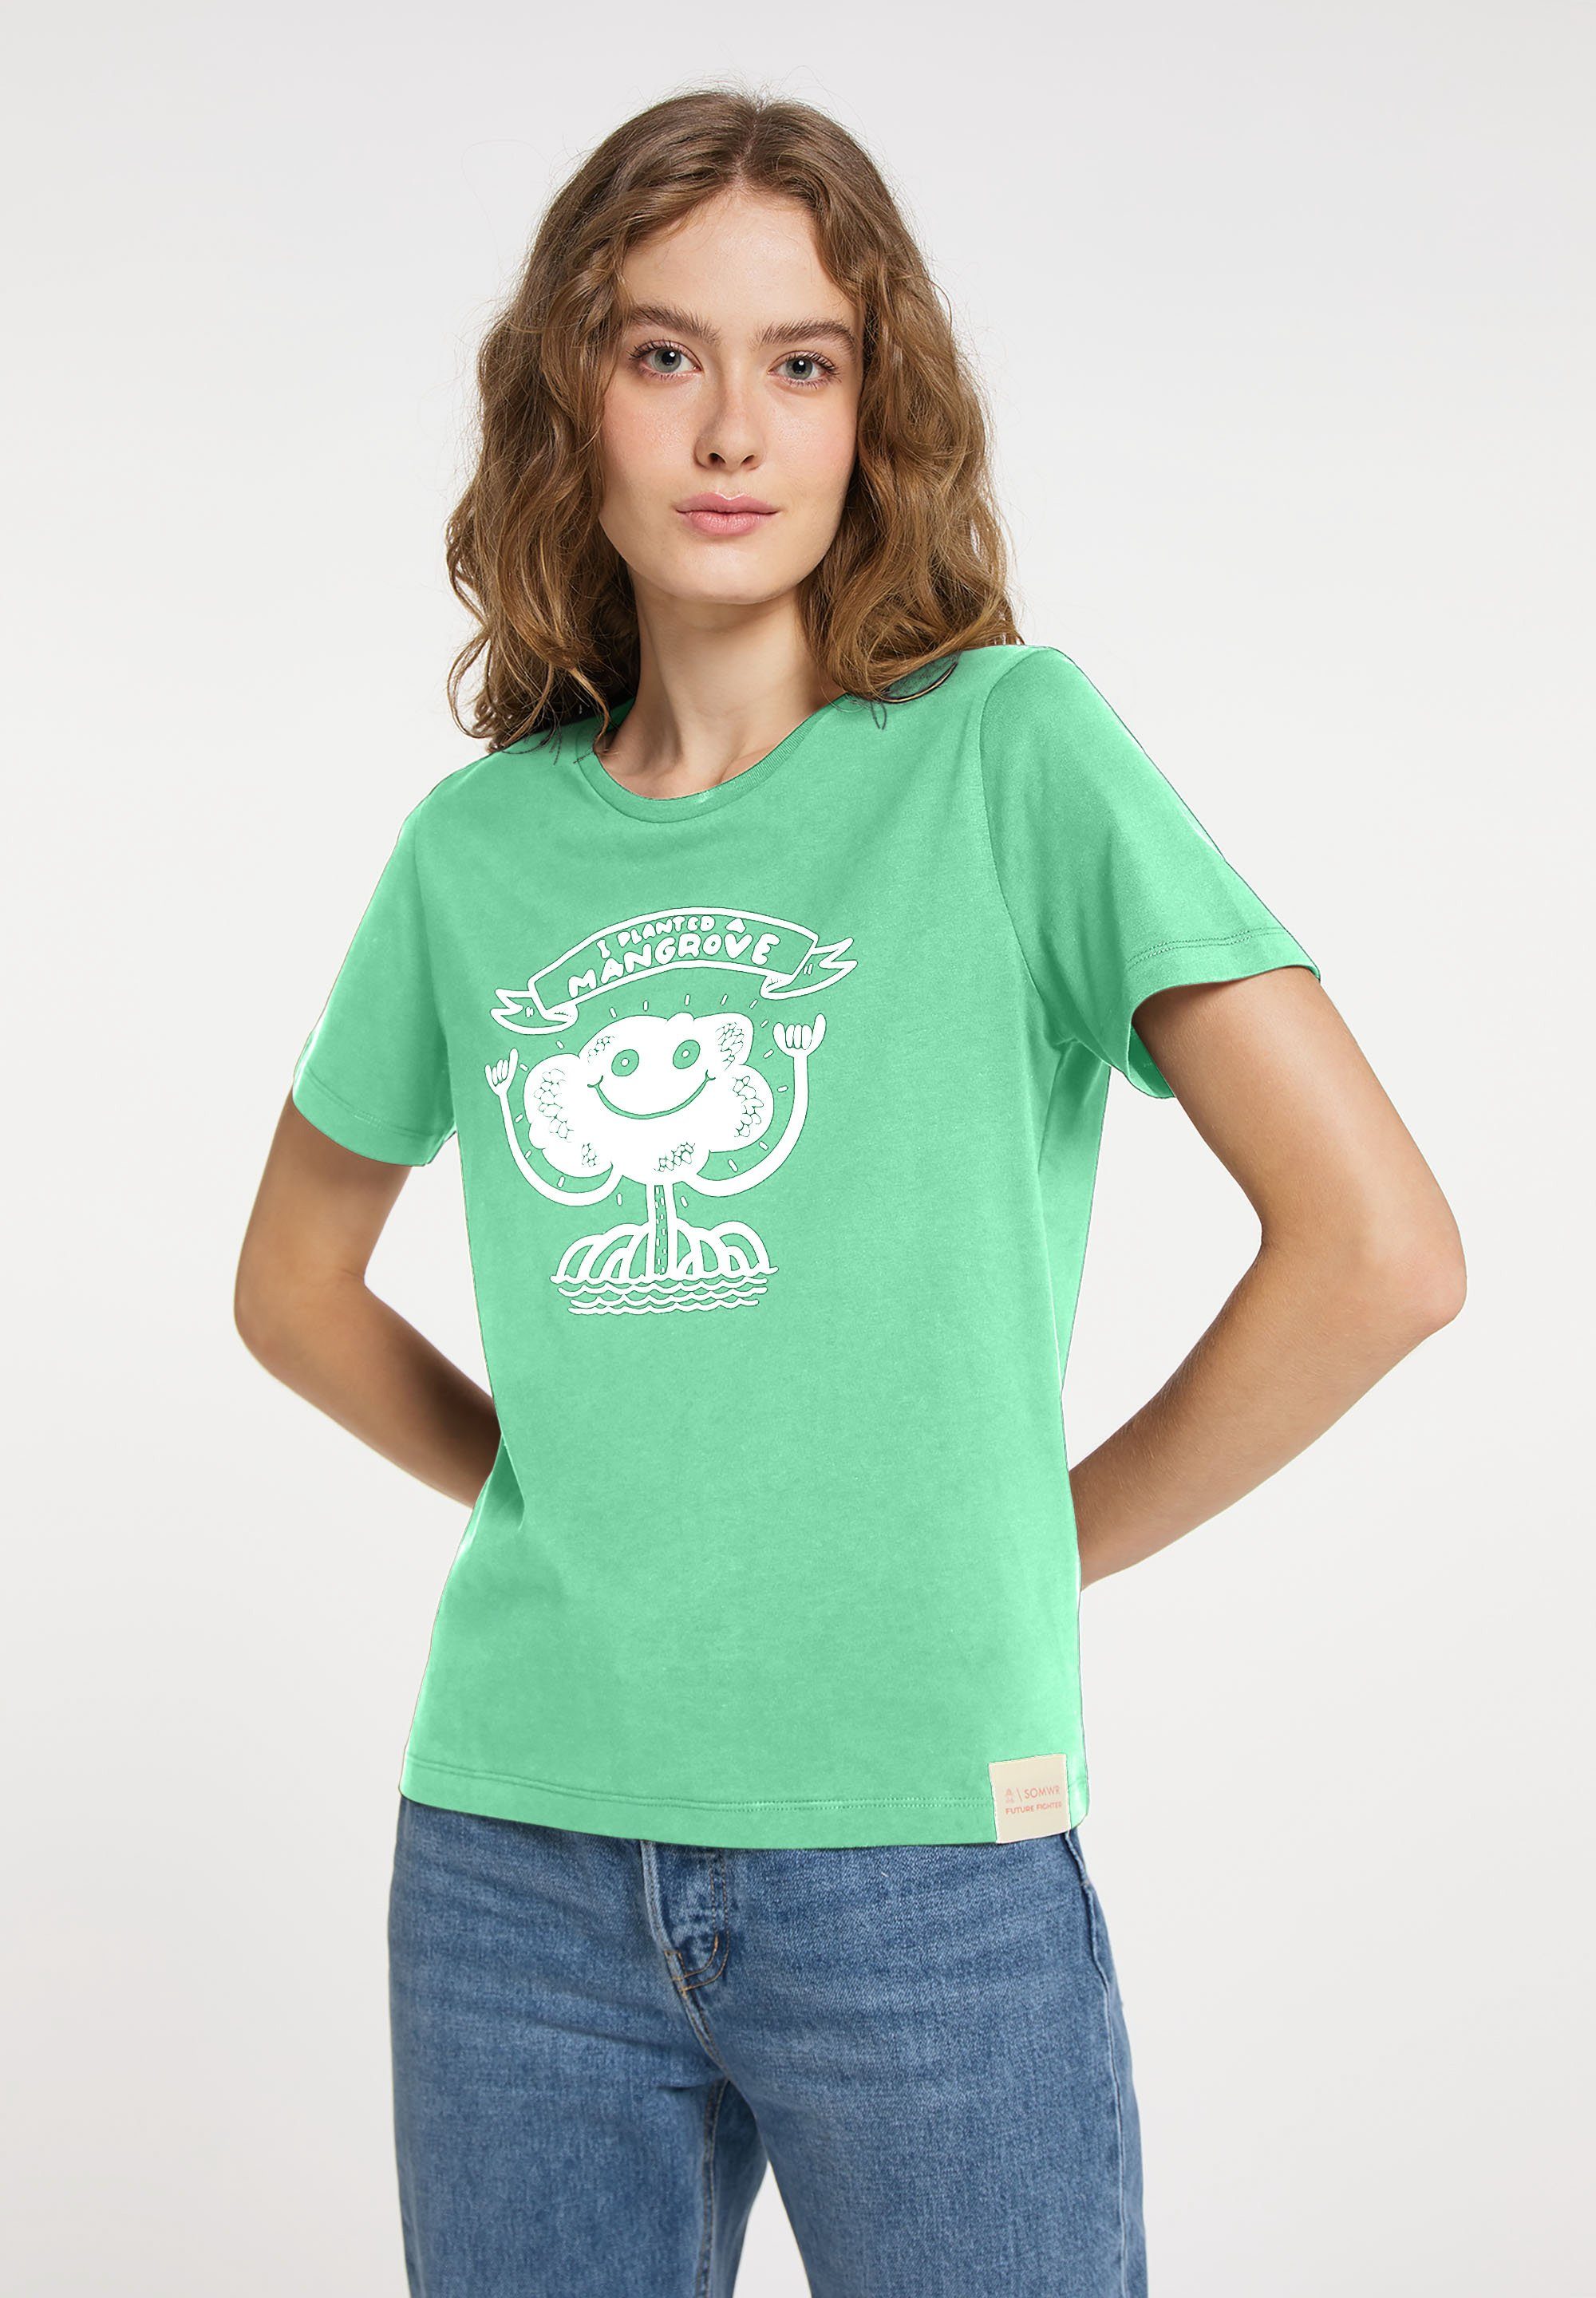 Damen Shirts SOMWR Kurzarmshirt T-Shirt With Mangrove Print 1 Mangrove gepflanzt / 1,1 kg Strand Plastik eingesammelt